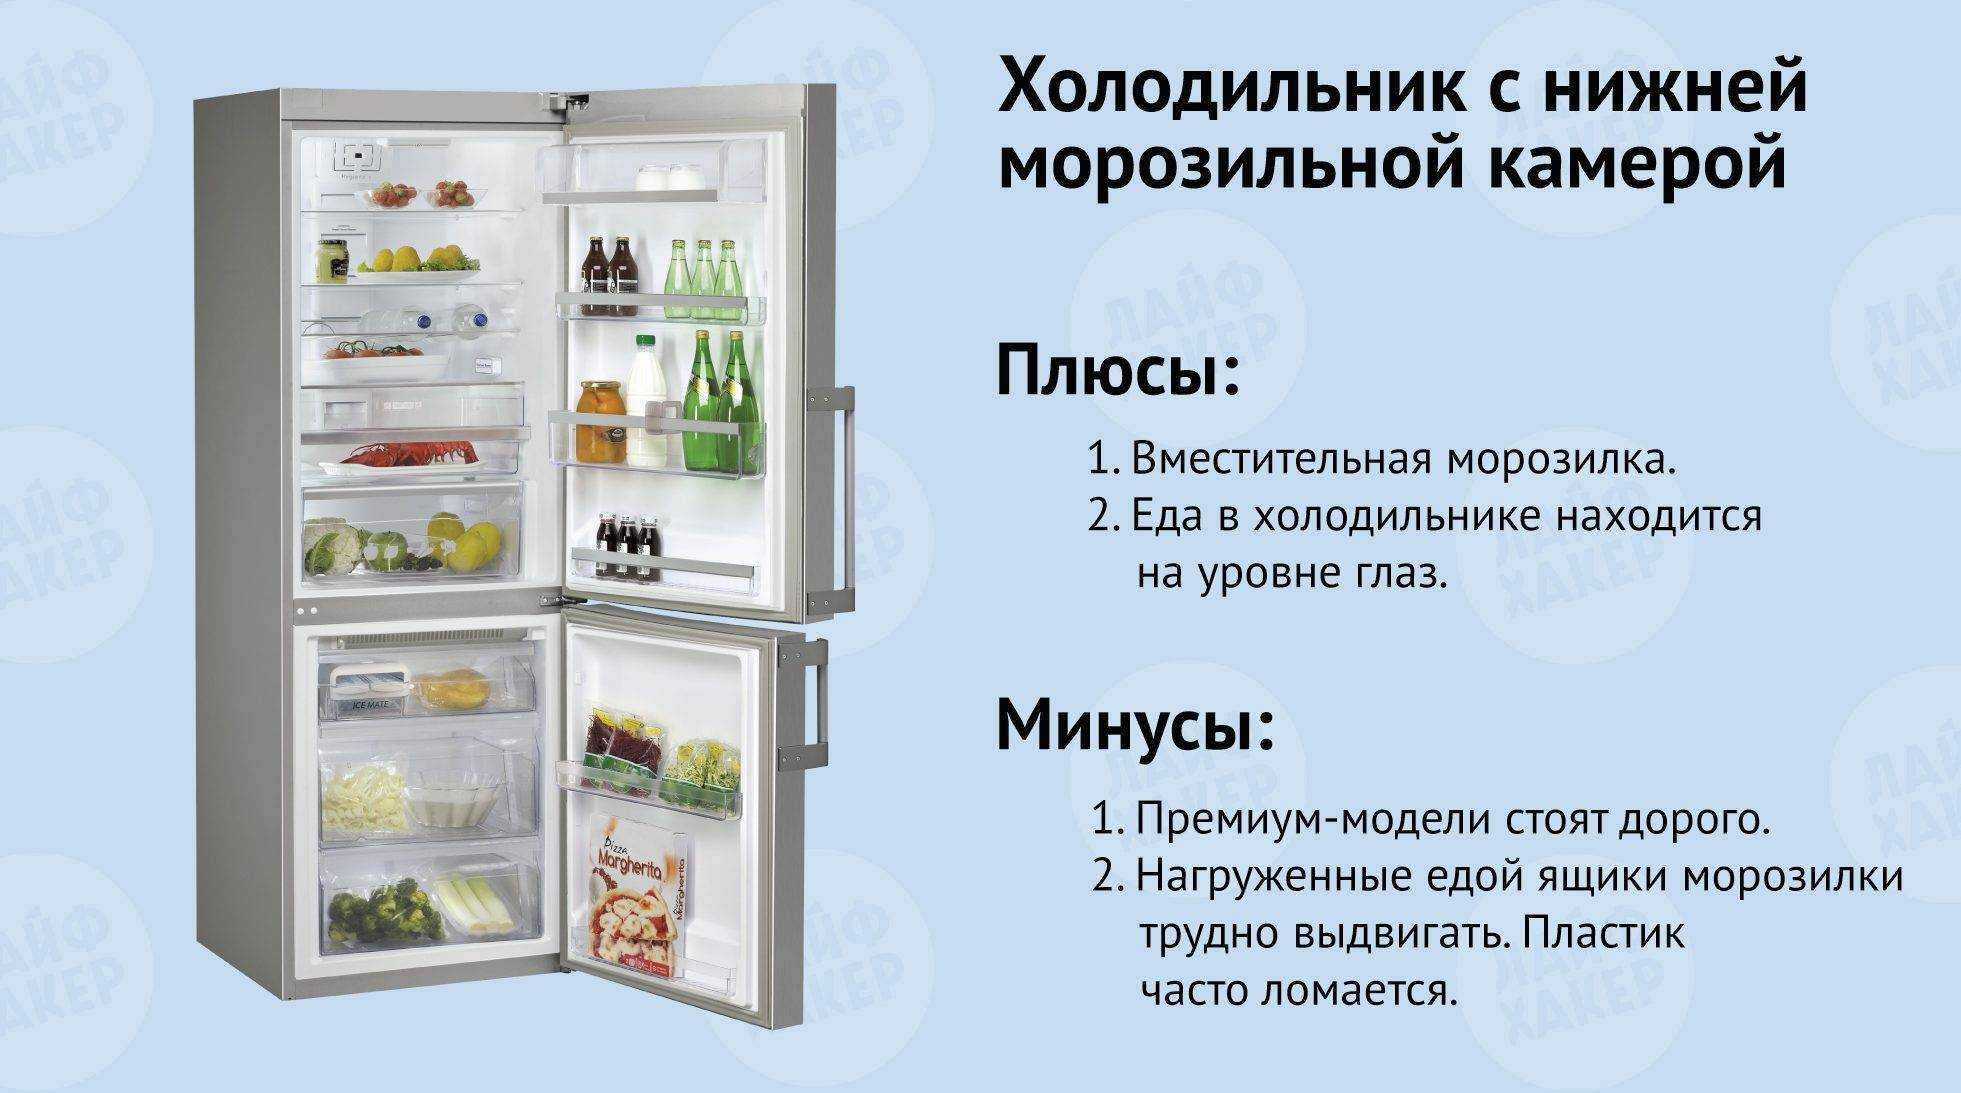 Какая температура должна быть в двухкамерном холодильнике